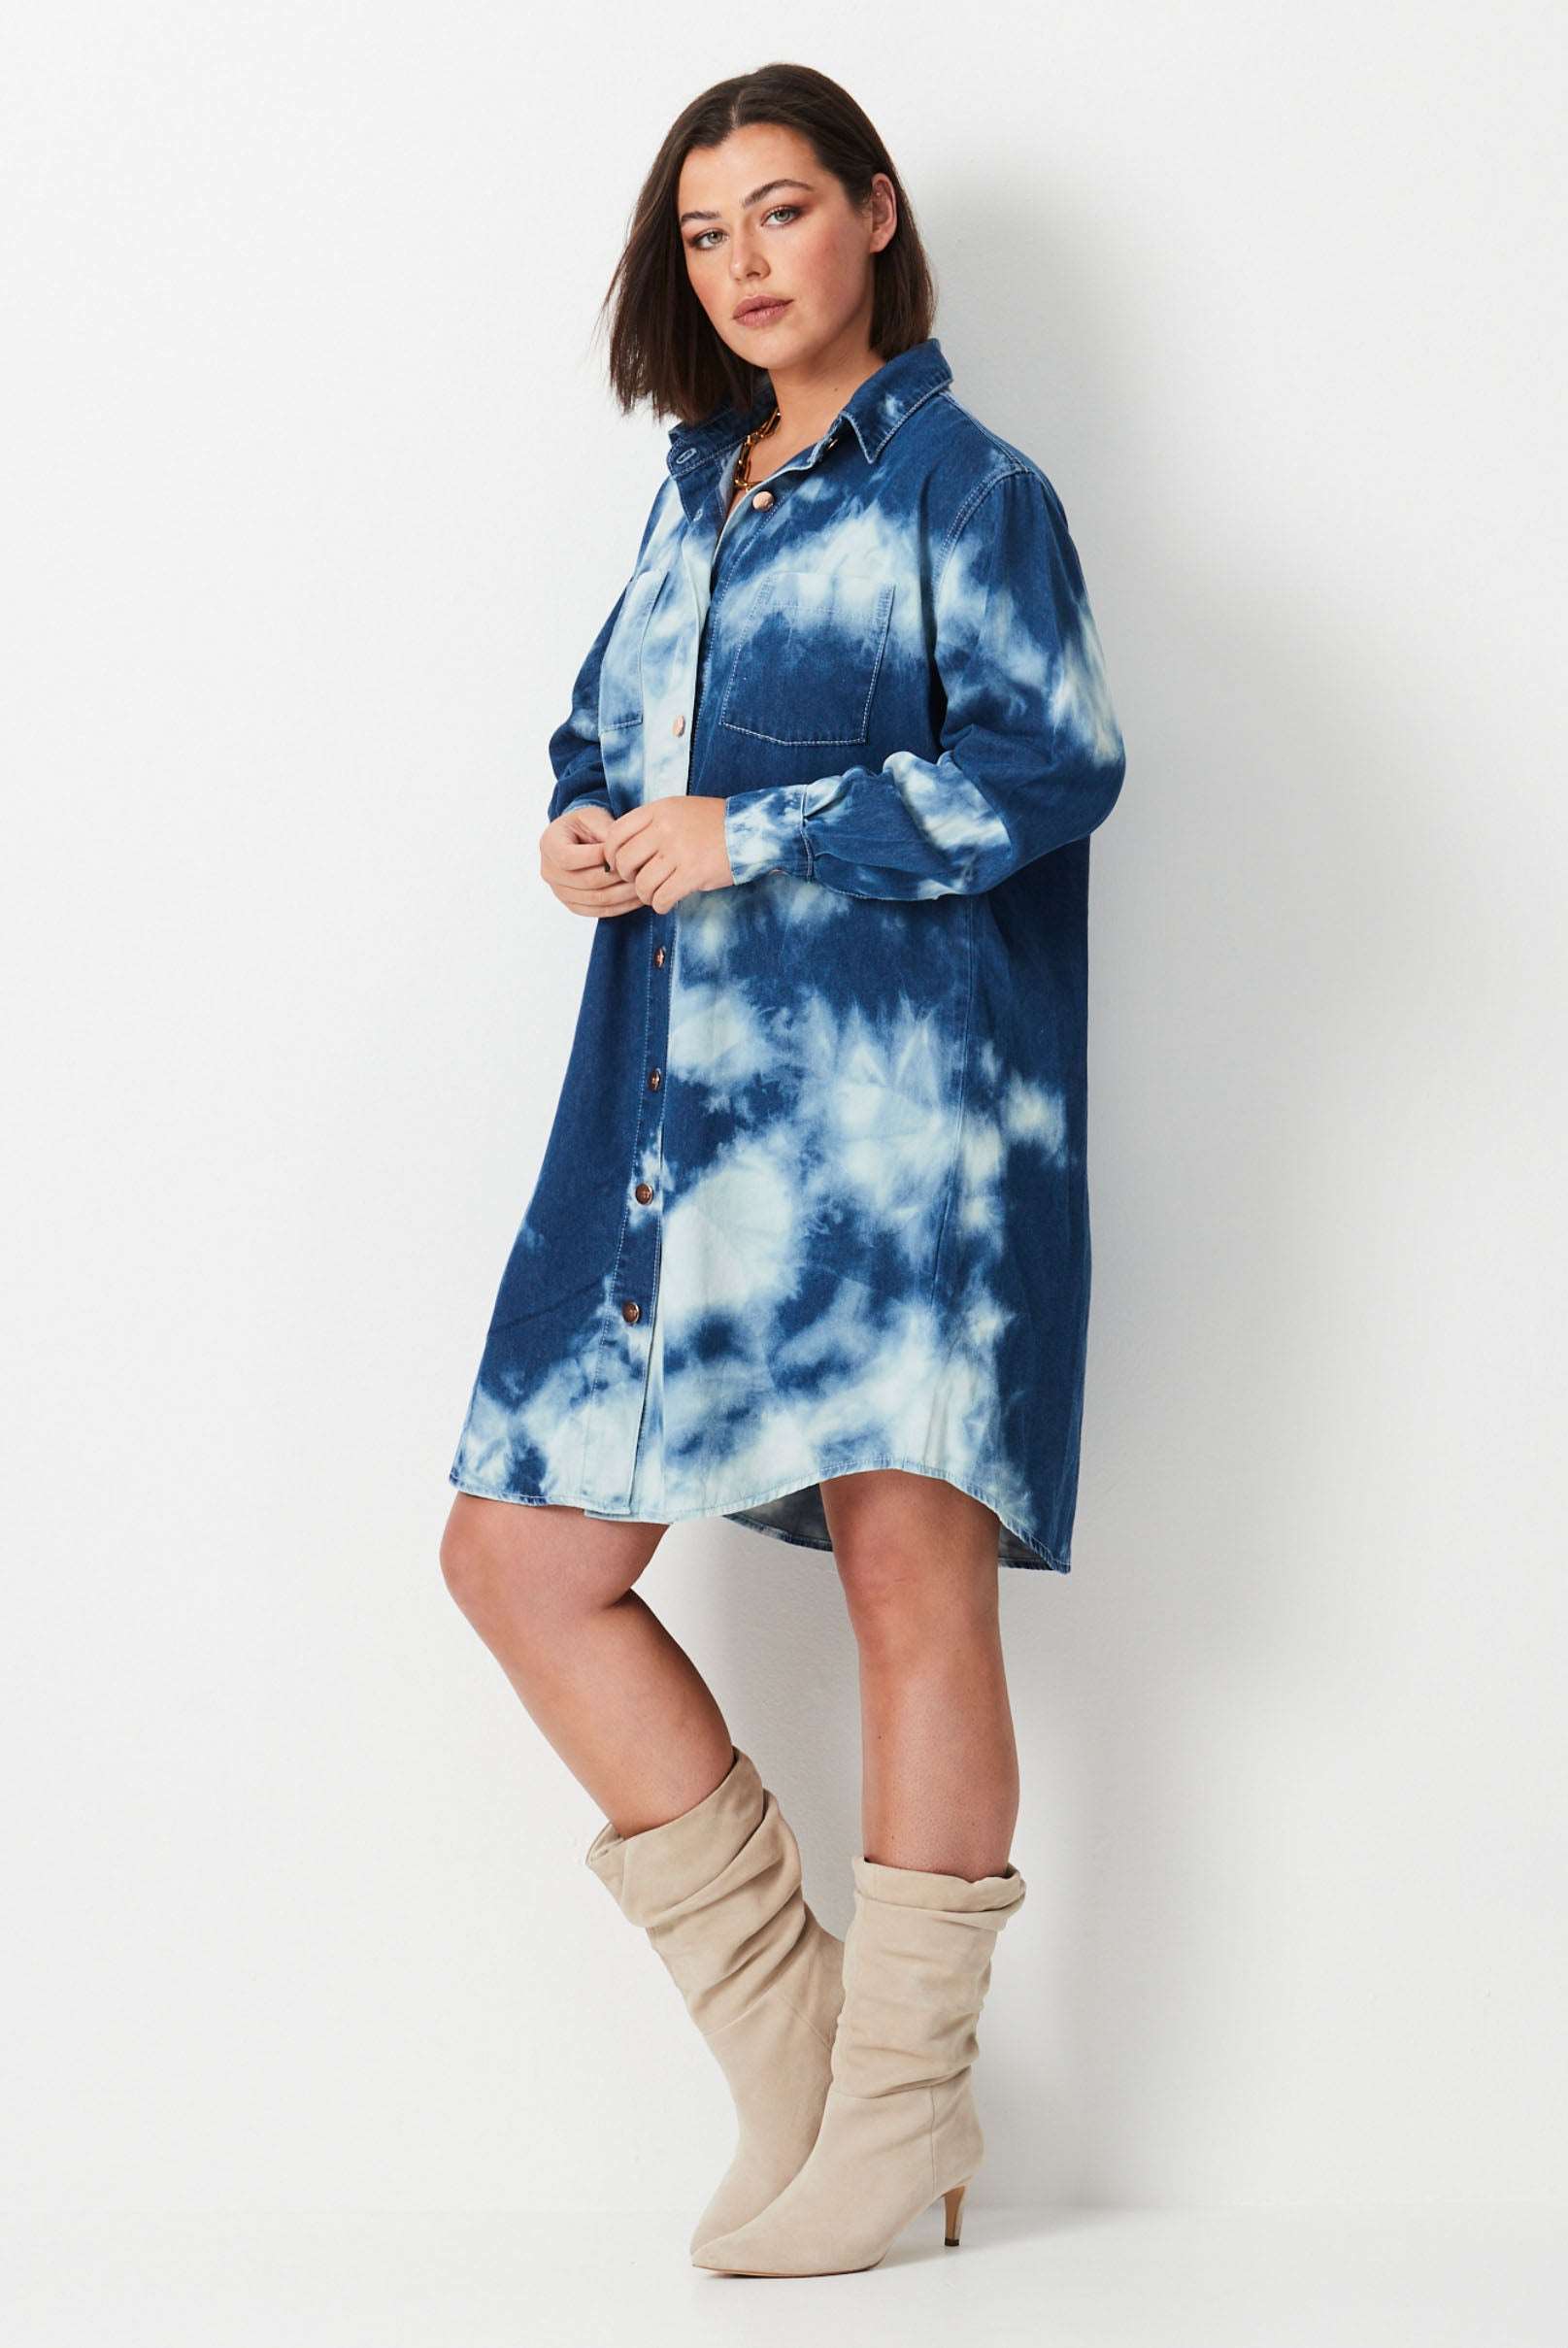 Model wears blue and white shibori tie dye plus size denim shirt dress 